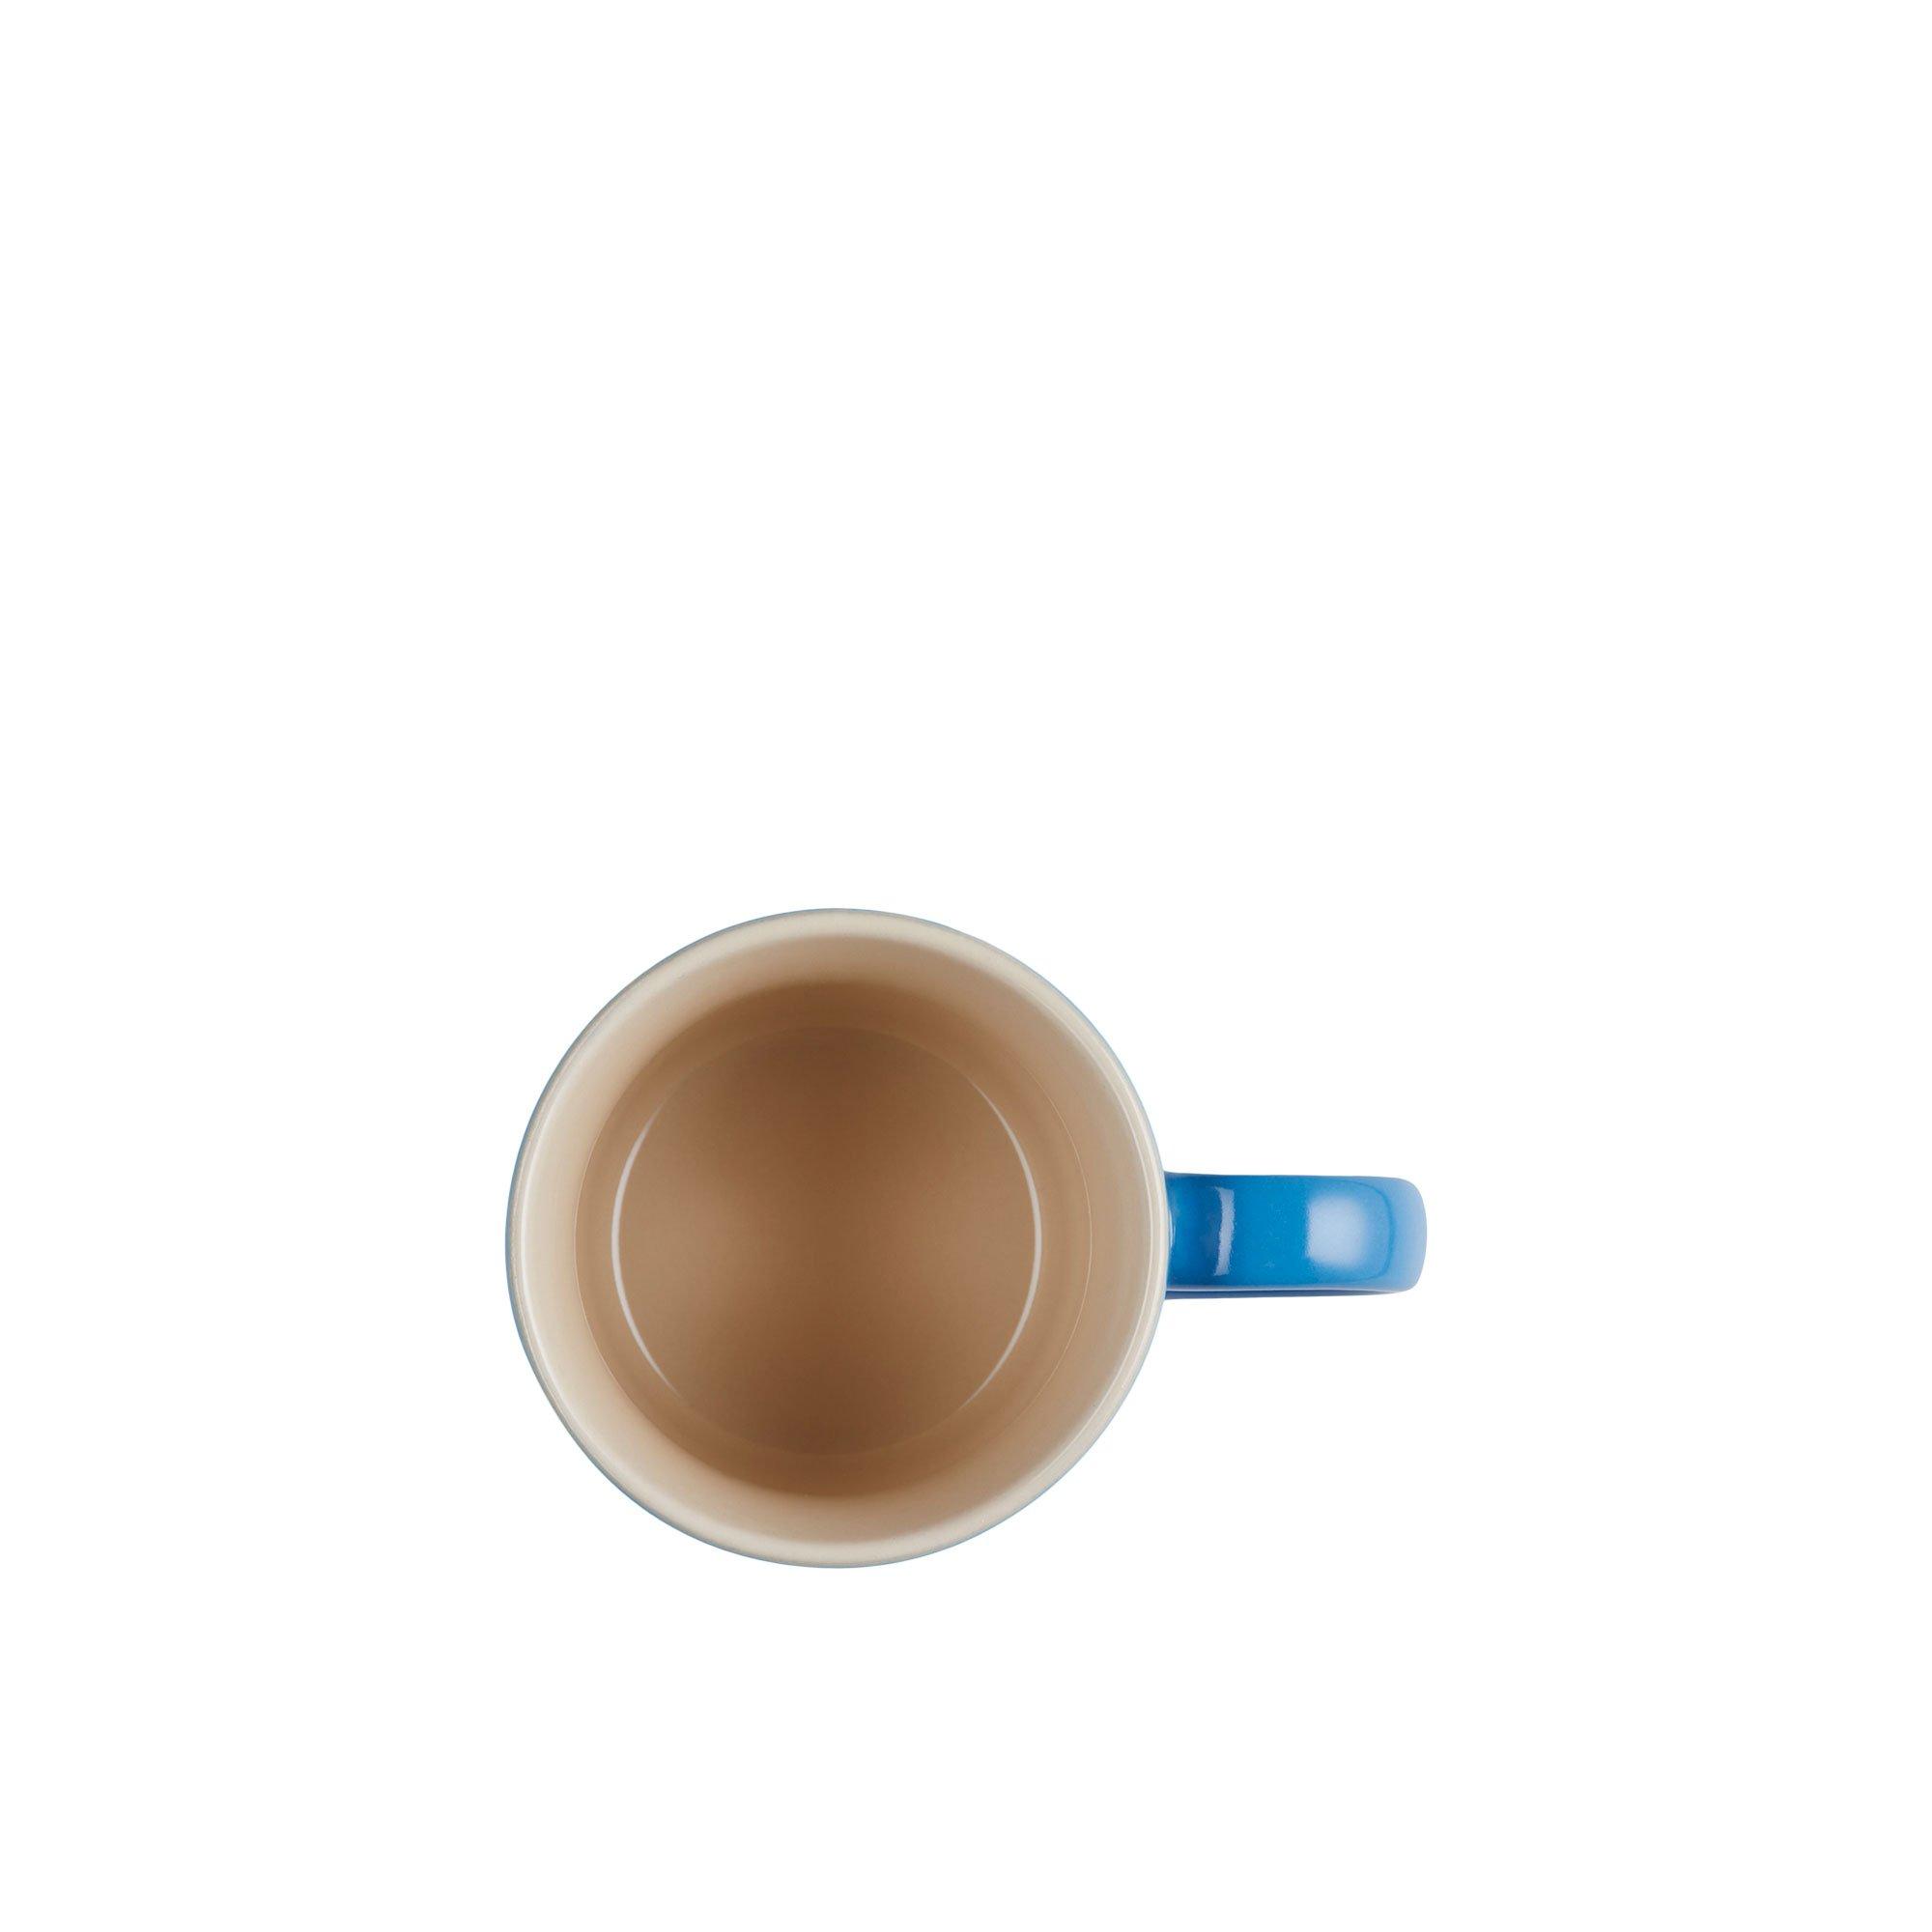 Le Creuset Stoneware Espresso Mug 100ml Azure Blue Image 4